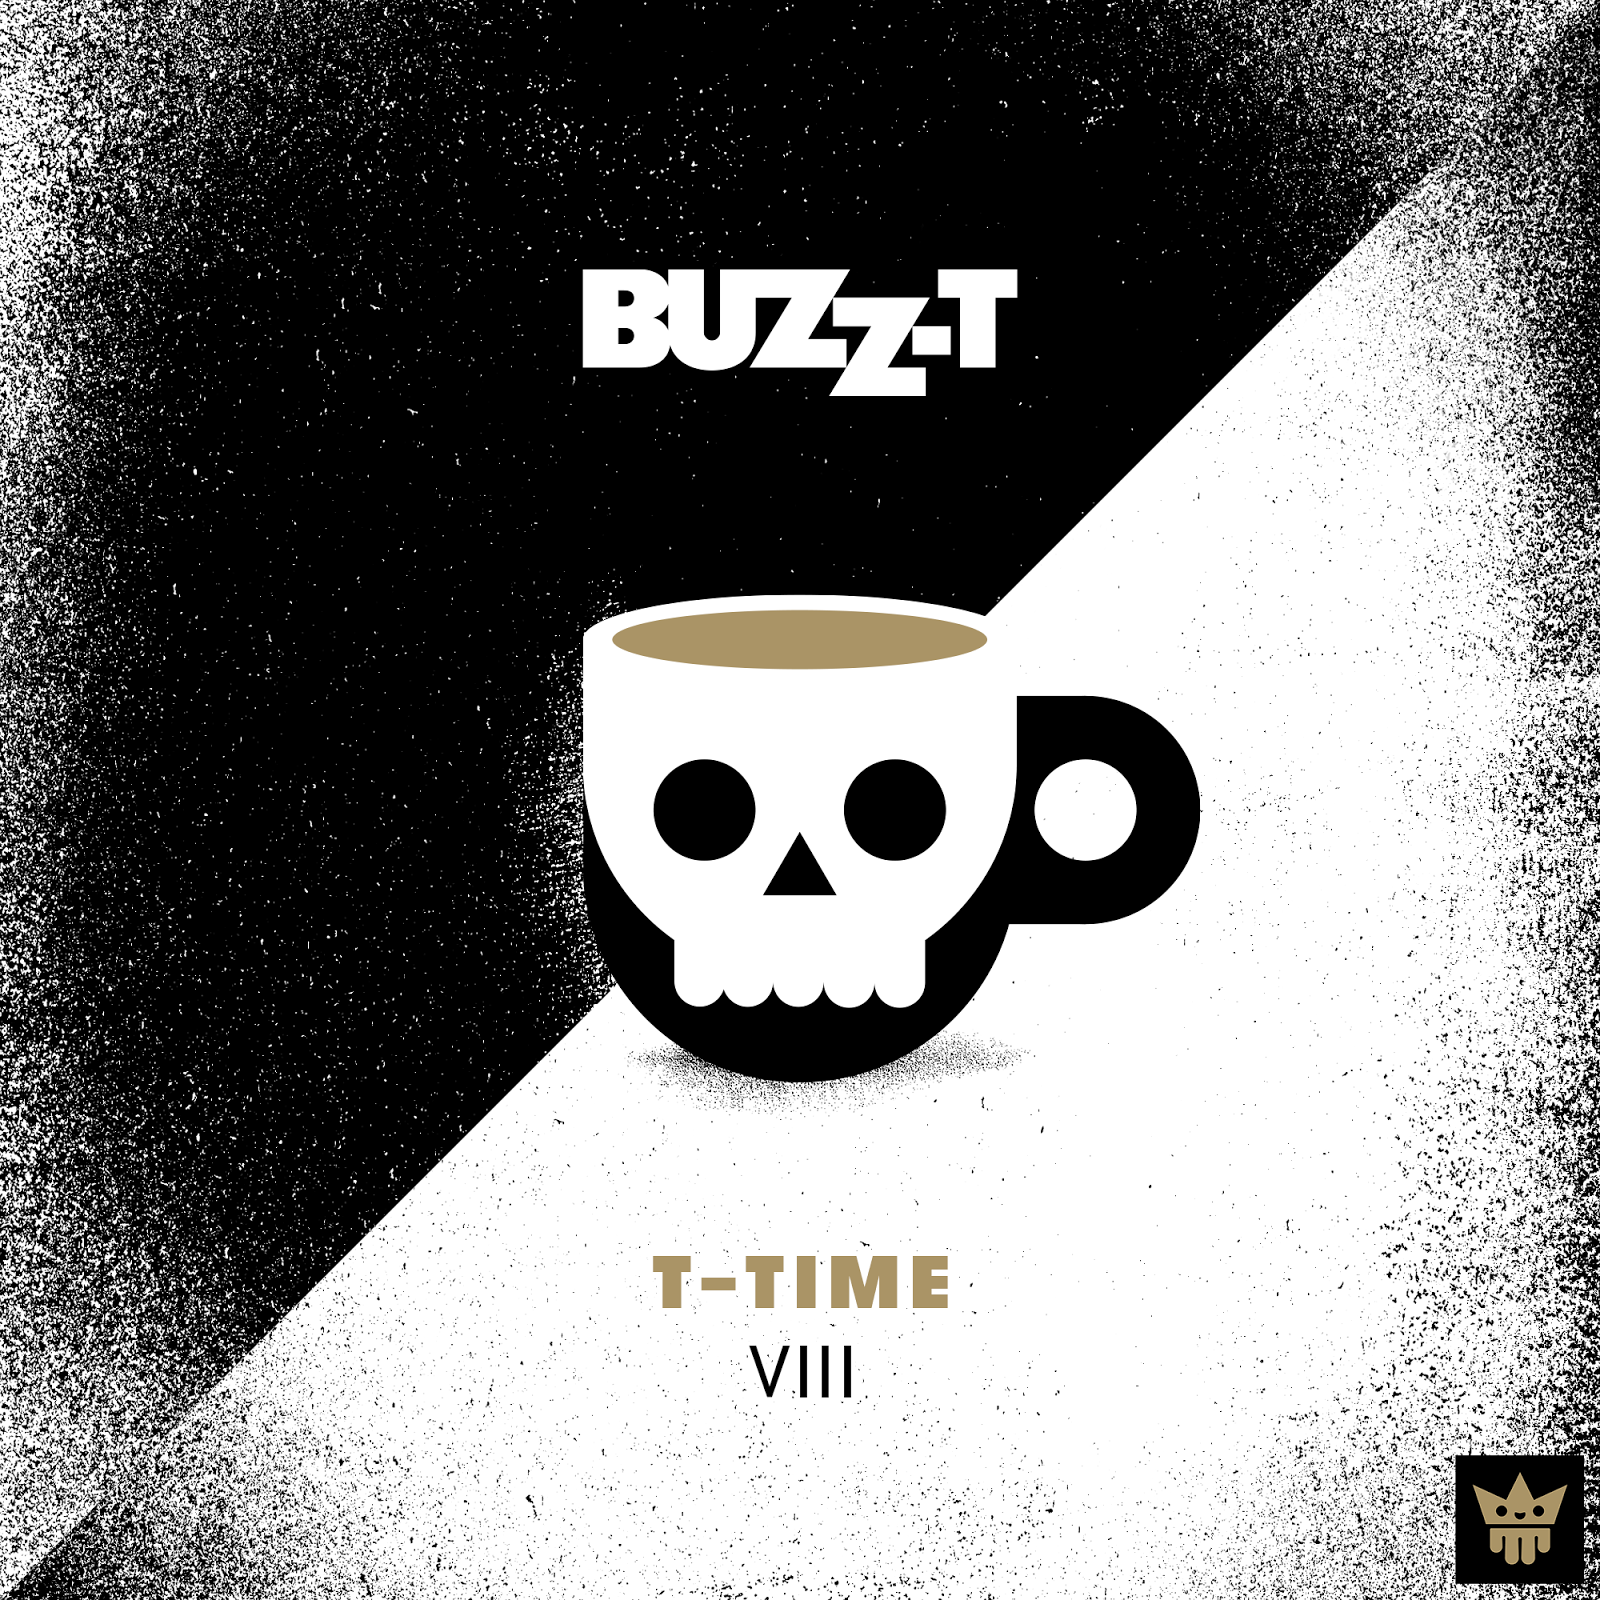 Buzz-T – T-Time 8 | Das Blogbuzzter HipHop Mixtape 